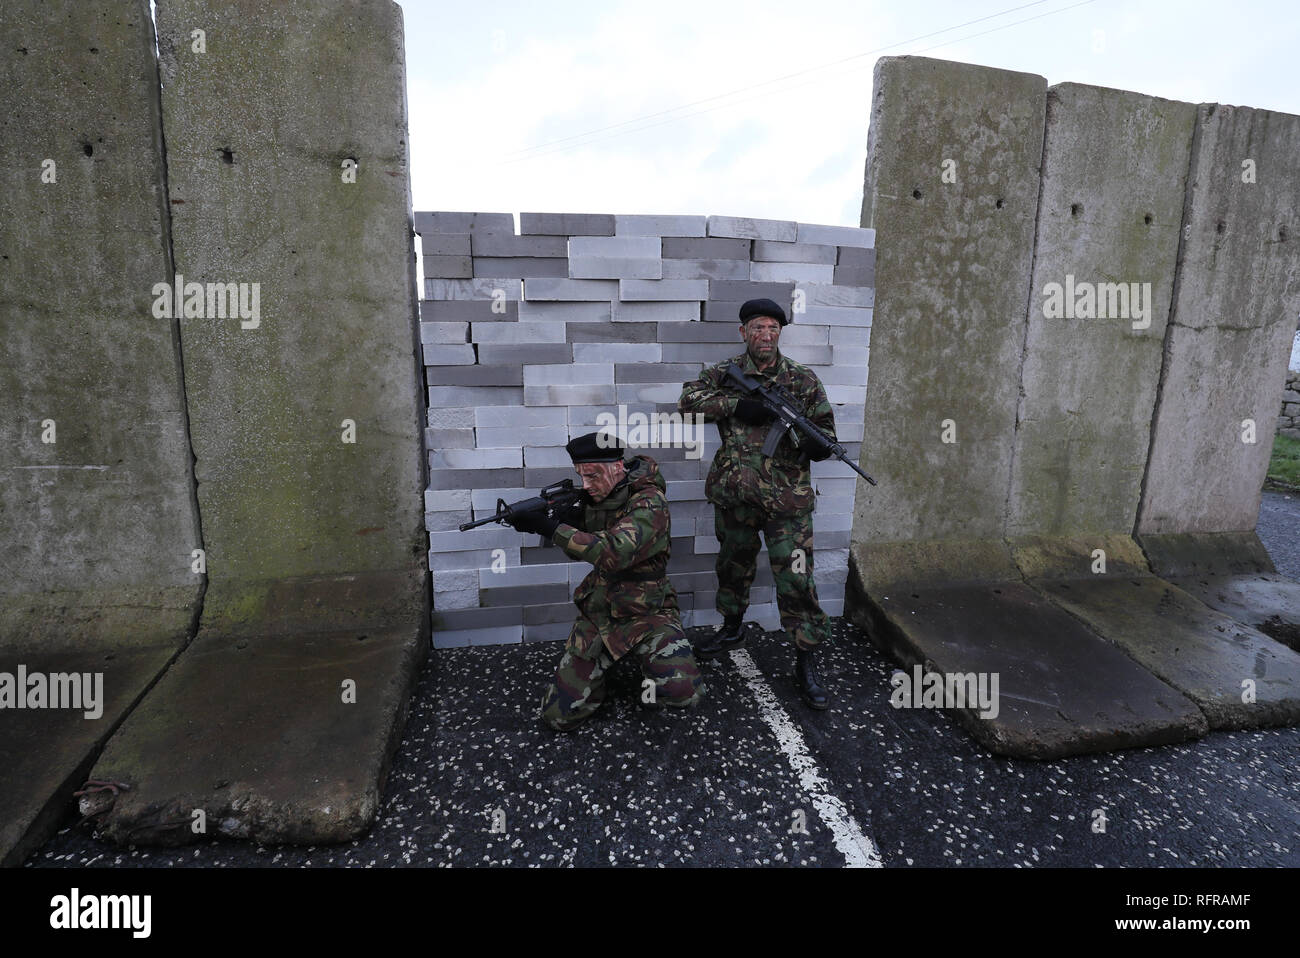 Attori militari per le fatiche prendere parte ad un anti-Brexit al rally di frontiera irlandese vicino Carrickcarnan, Co Louth, esprimendo la loro opposizione alla istituzione di un disco confine tra la Repubblica di Irlanda e Irlanda del Nord. Foto Stock